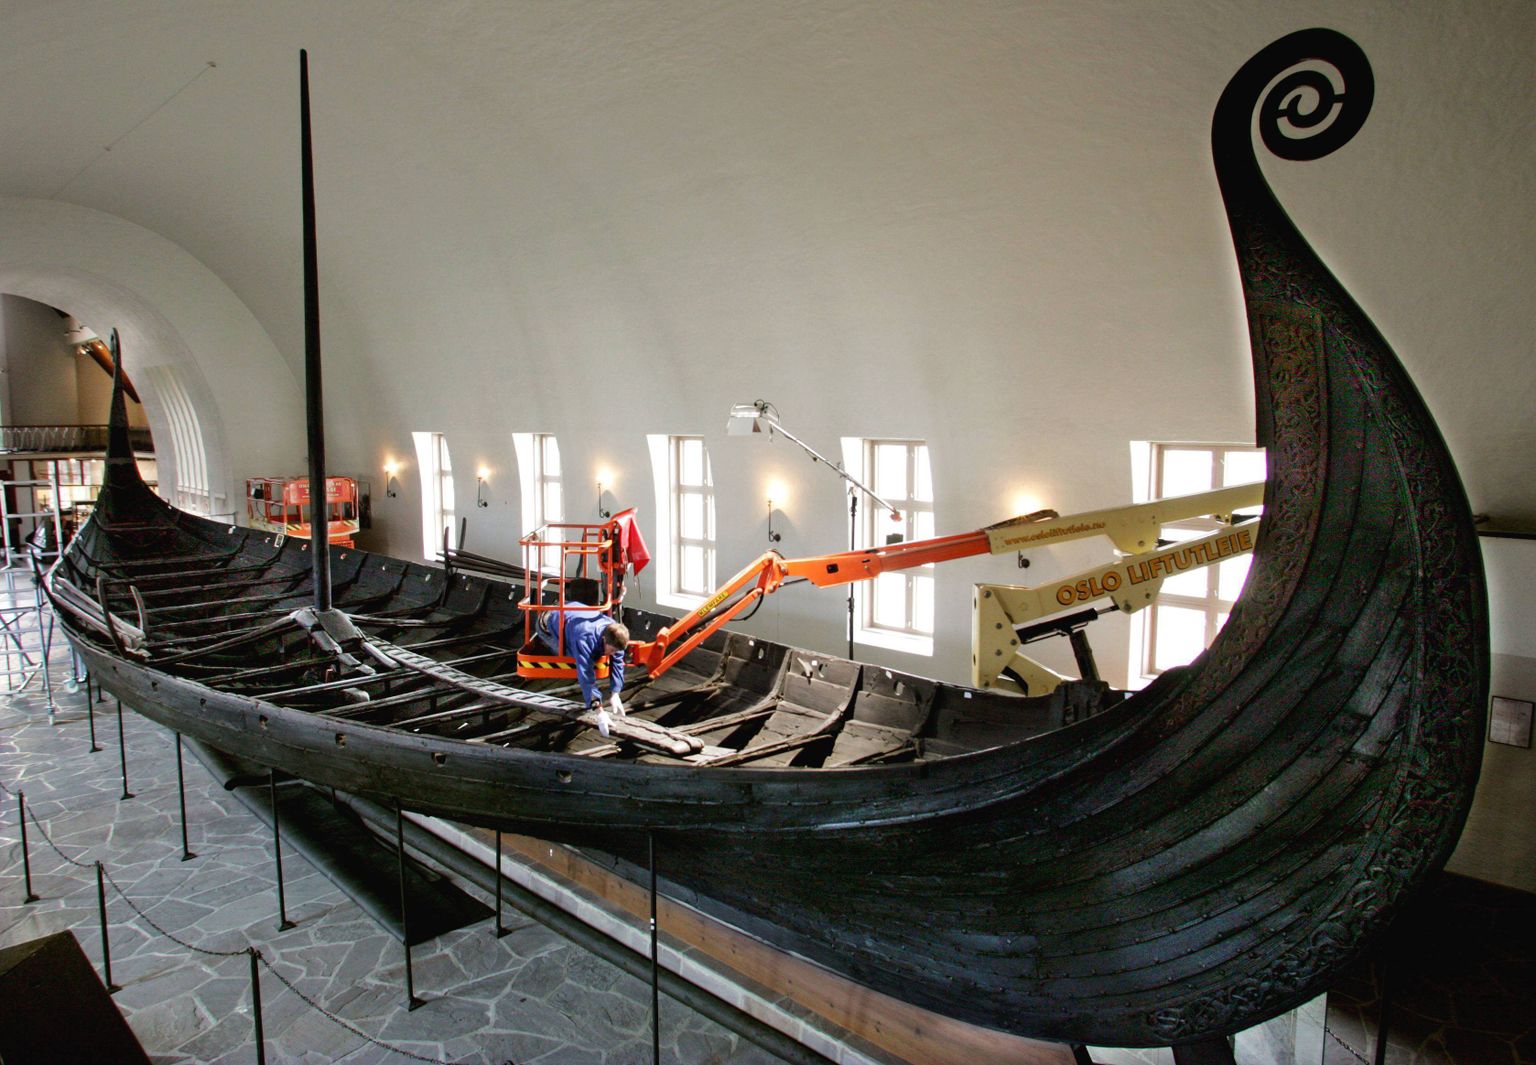 Oslo viikingimuuseumis asuv viikingilaev